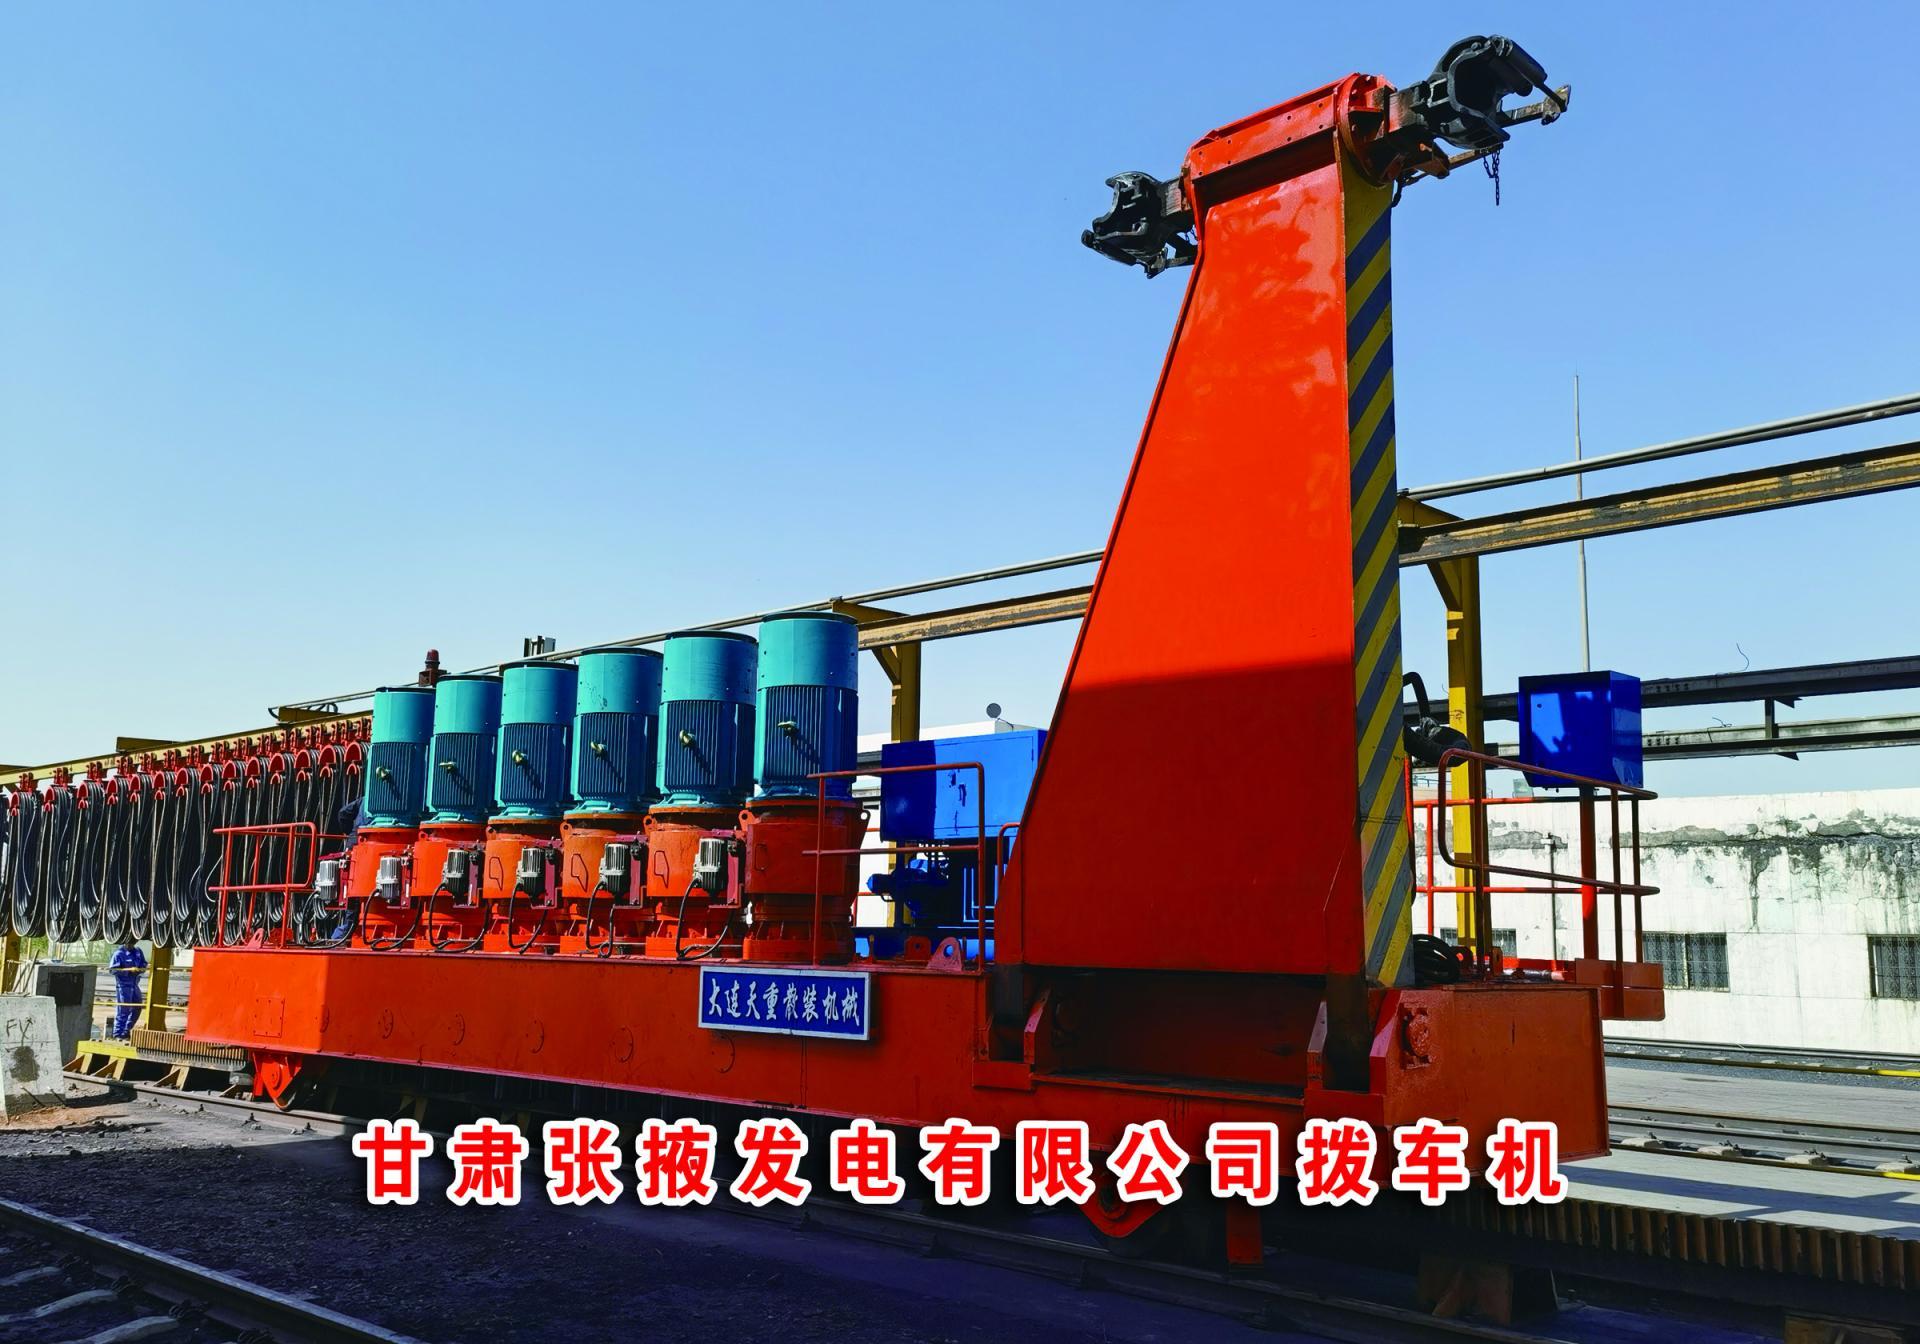 Gansu Zhangye Power Generation Co., Ltd. (car dialing machine)